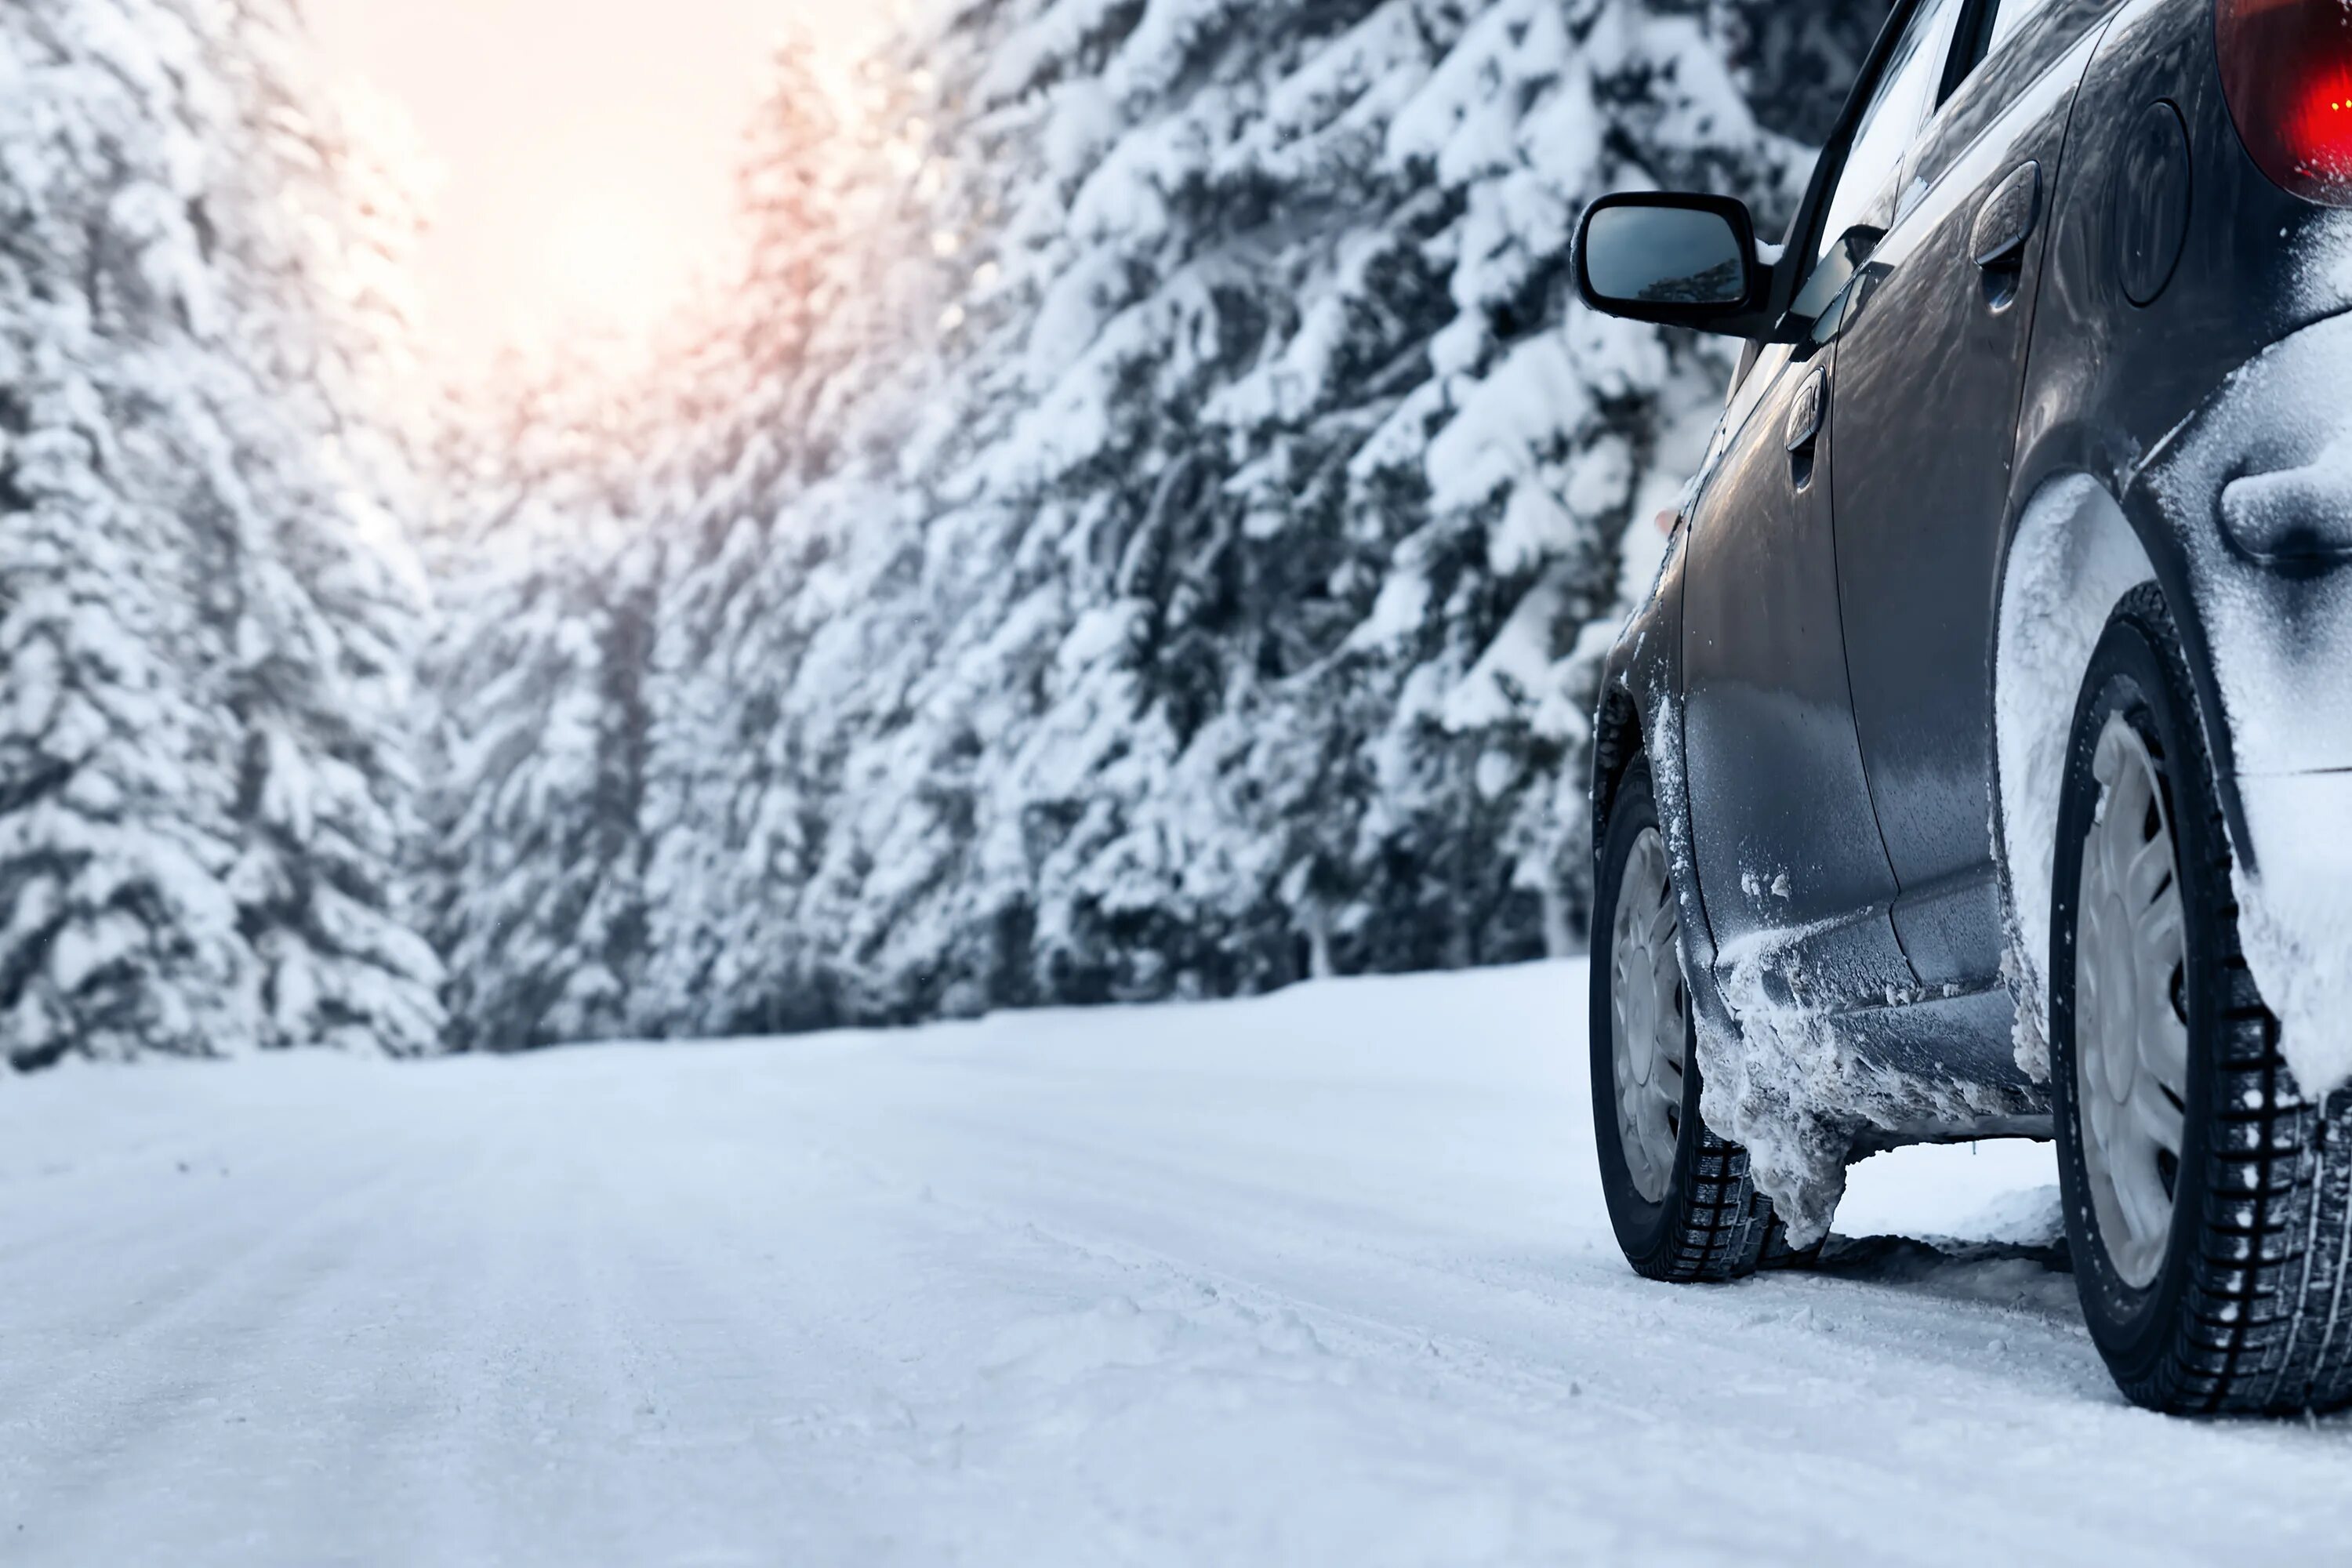 Машина зима. Машина зимой. Машина в снегу. Зима дорога машина.